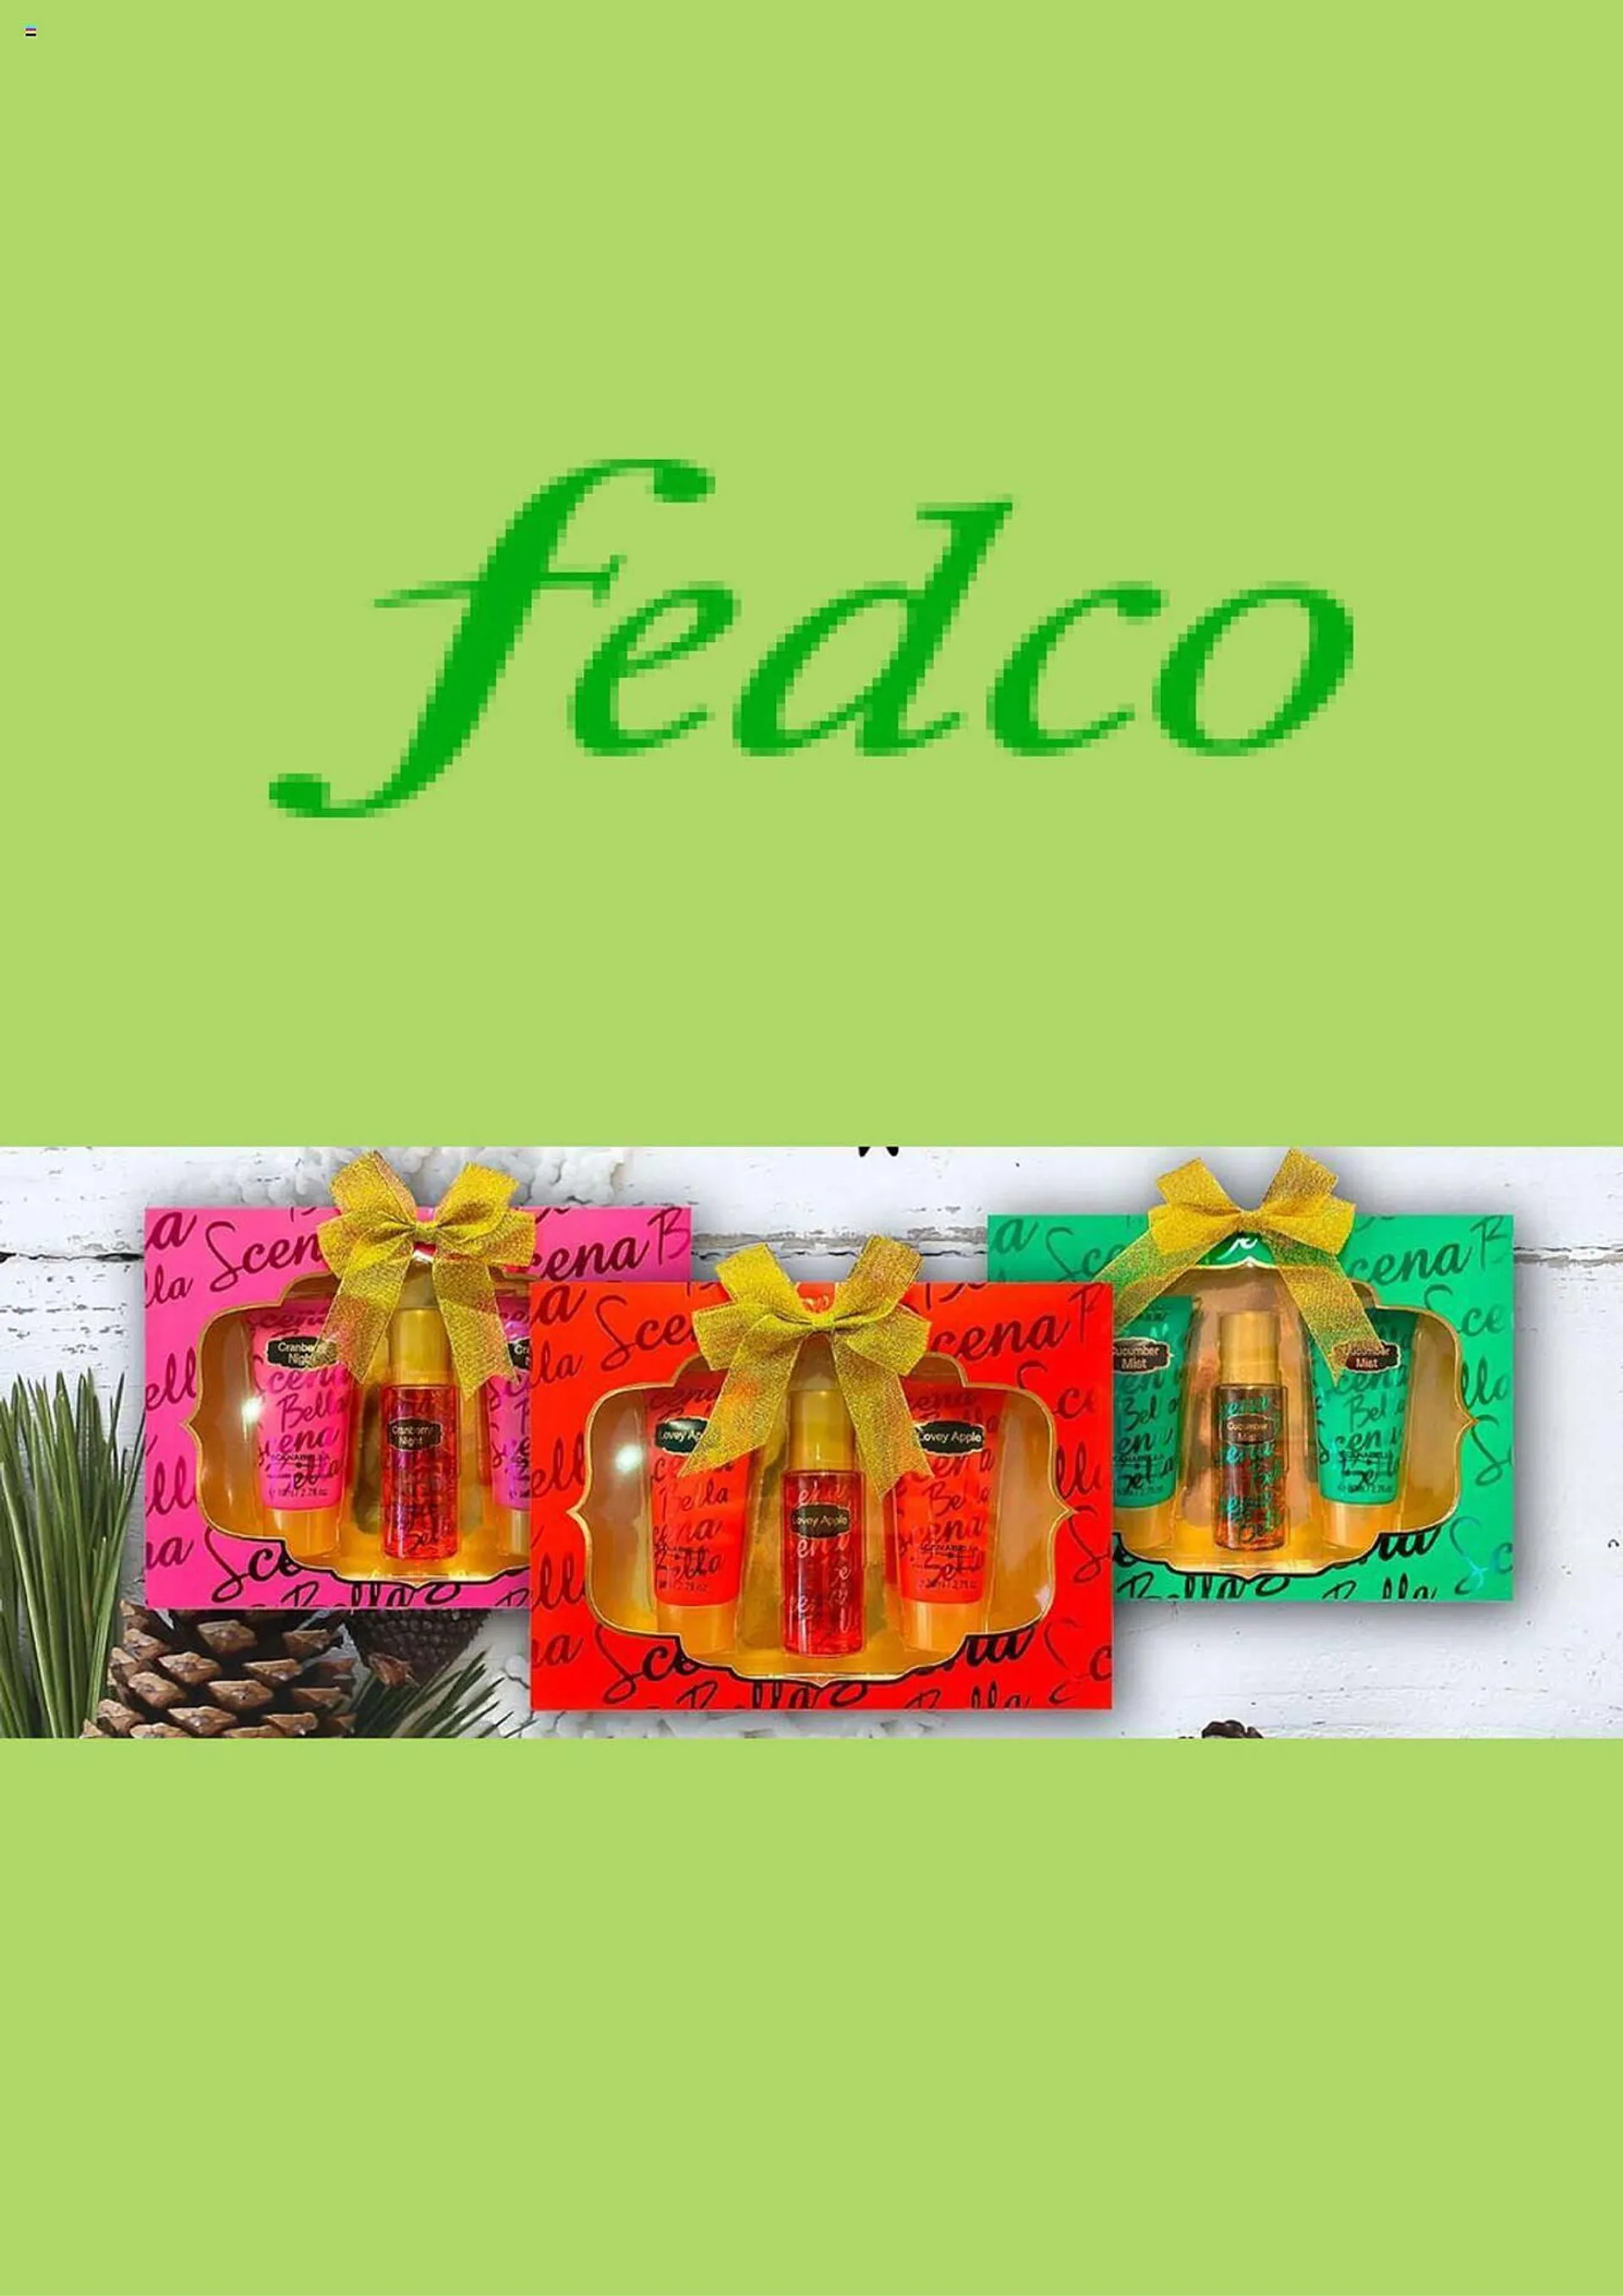 Catálogo Fedco - 1